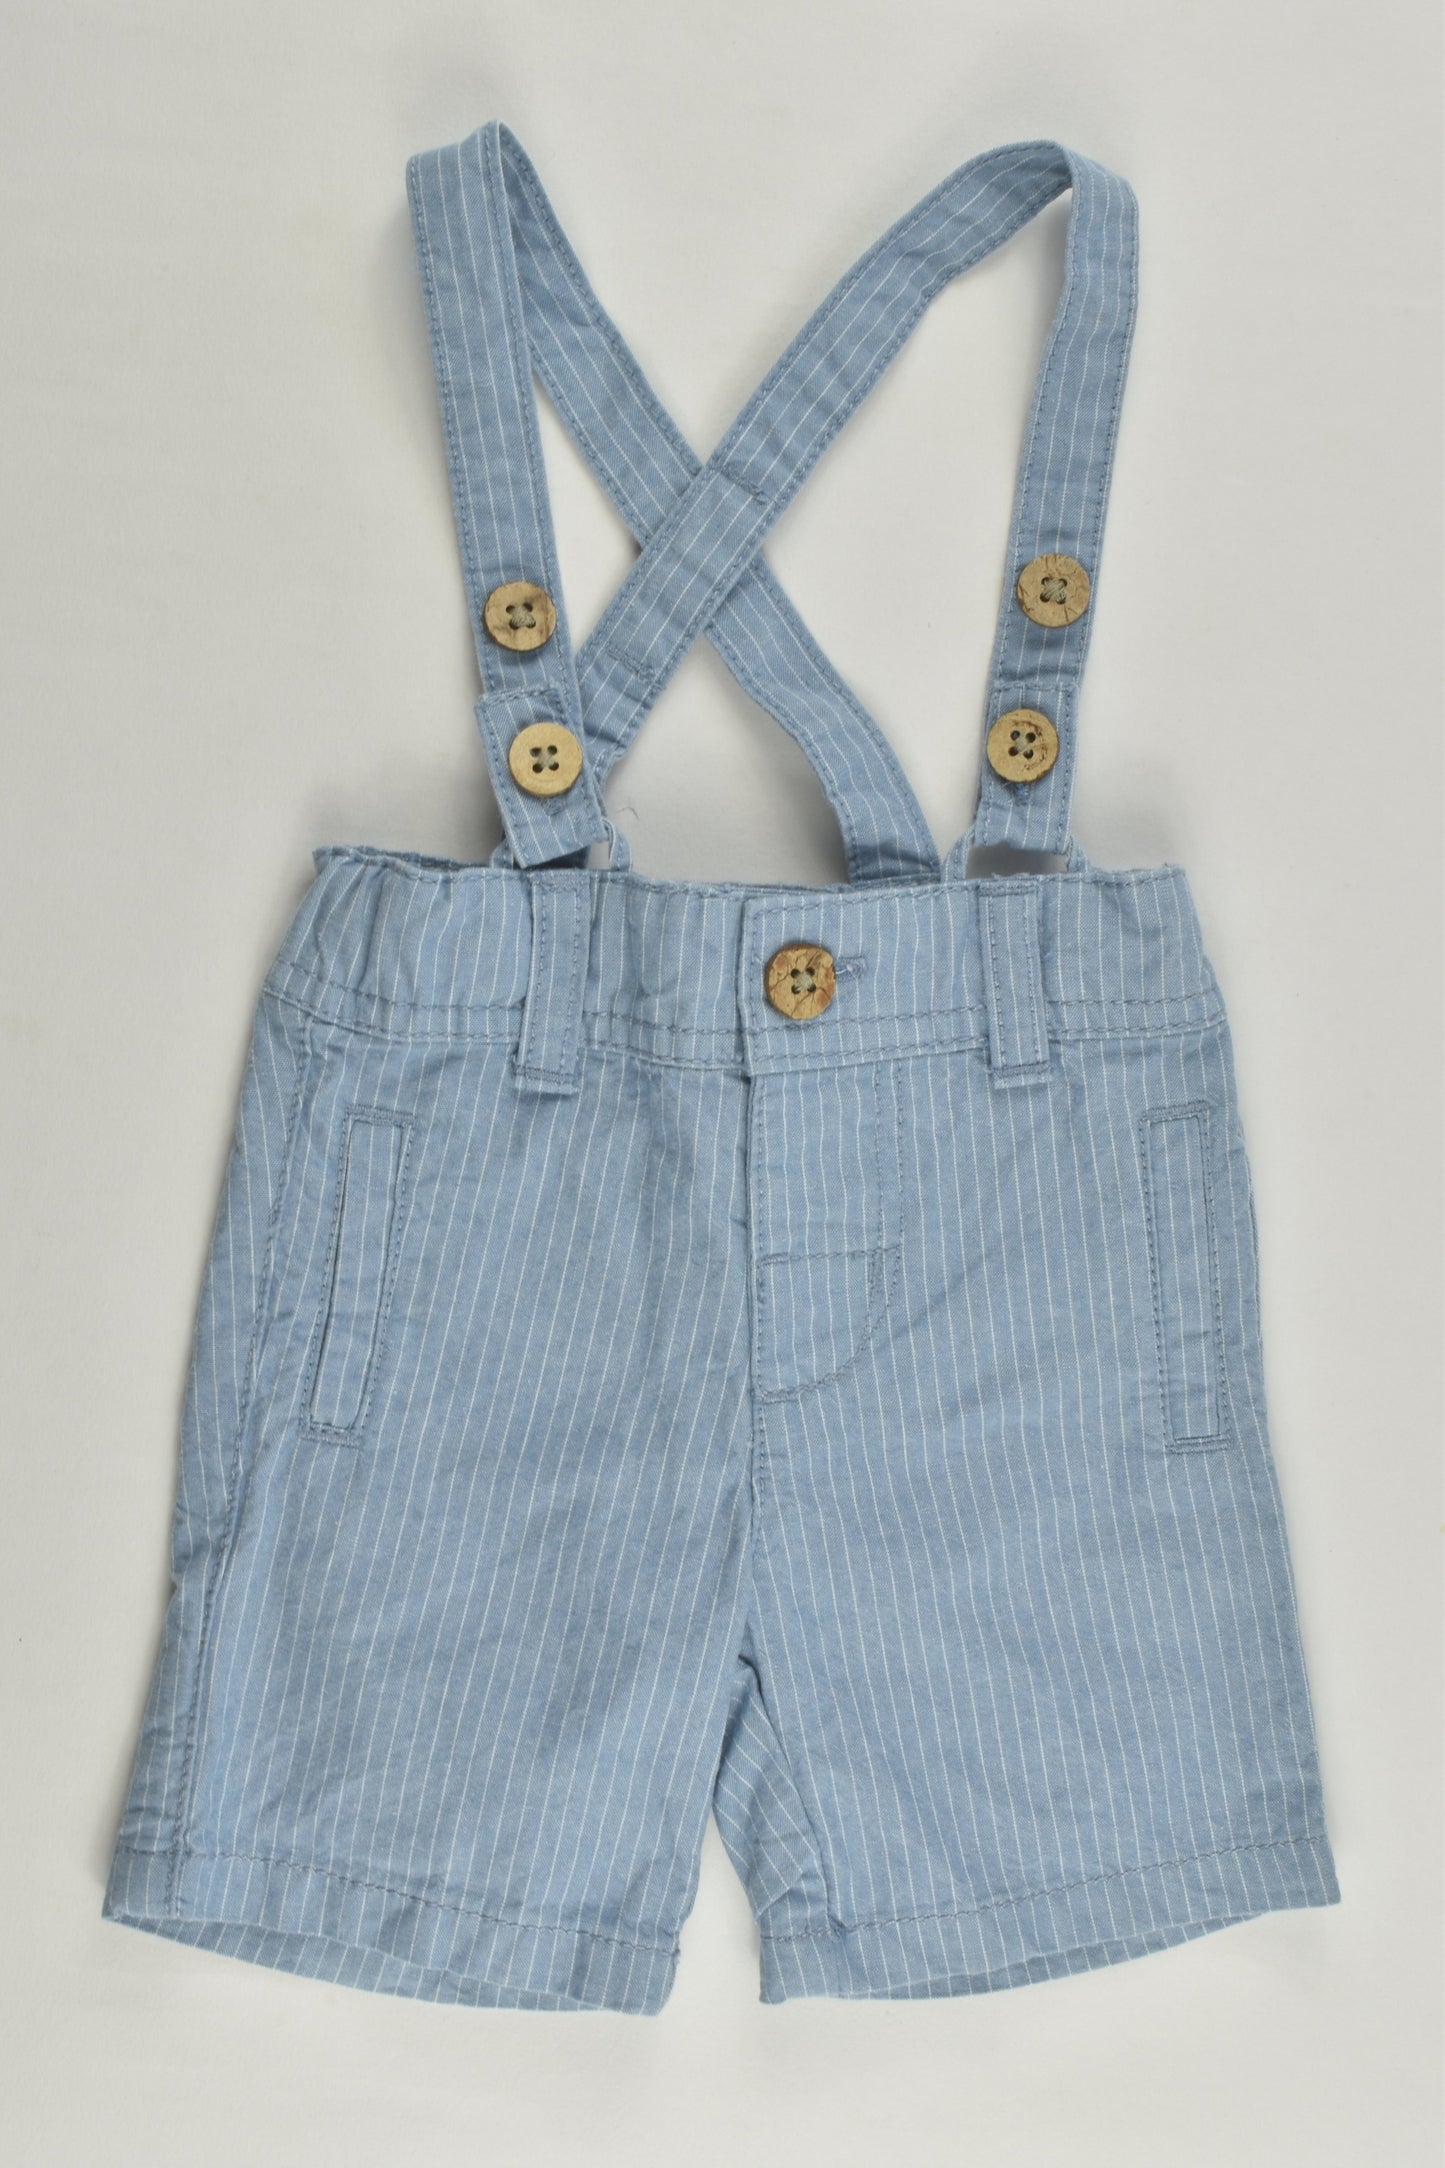 Matalan Size 0000 (Newborn) Striped Suspender Shorts